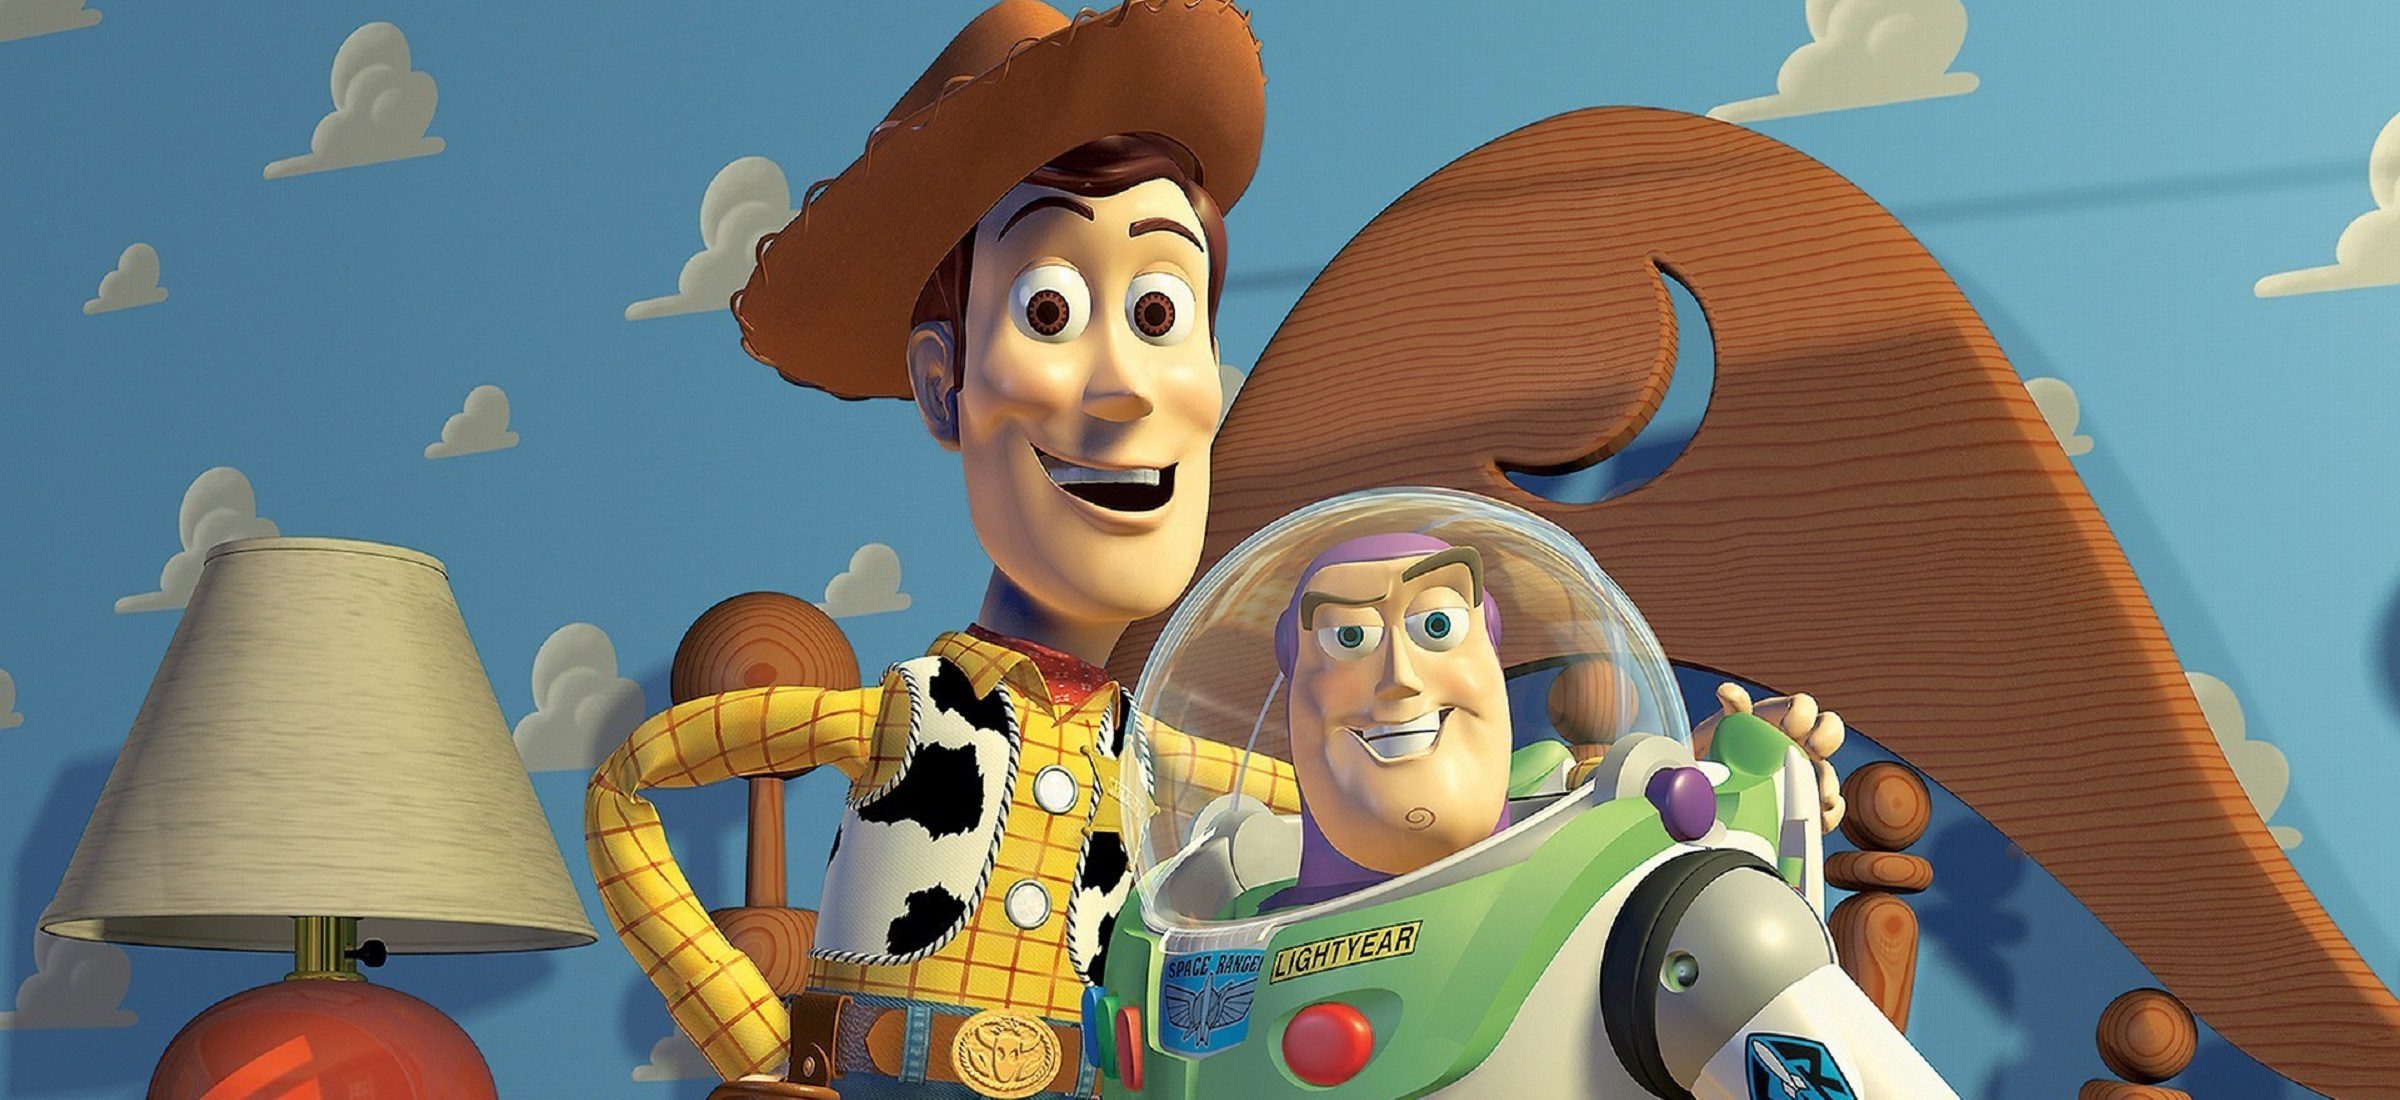 Kinder und Eltern lieben Pixar. Bevor die Macher von Toy Story Erfolg hatten, hatten sie einen langen und holprigen Weg hinter sich 77